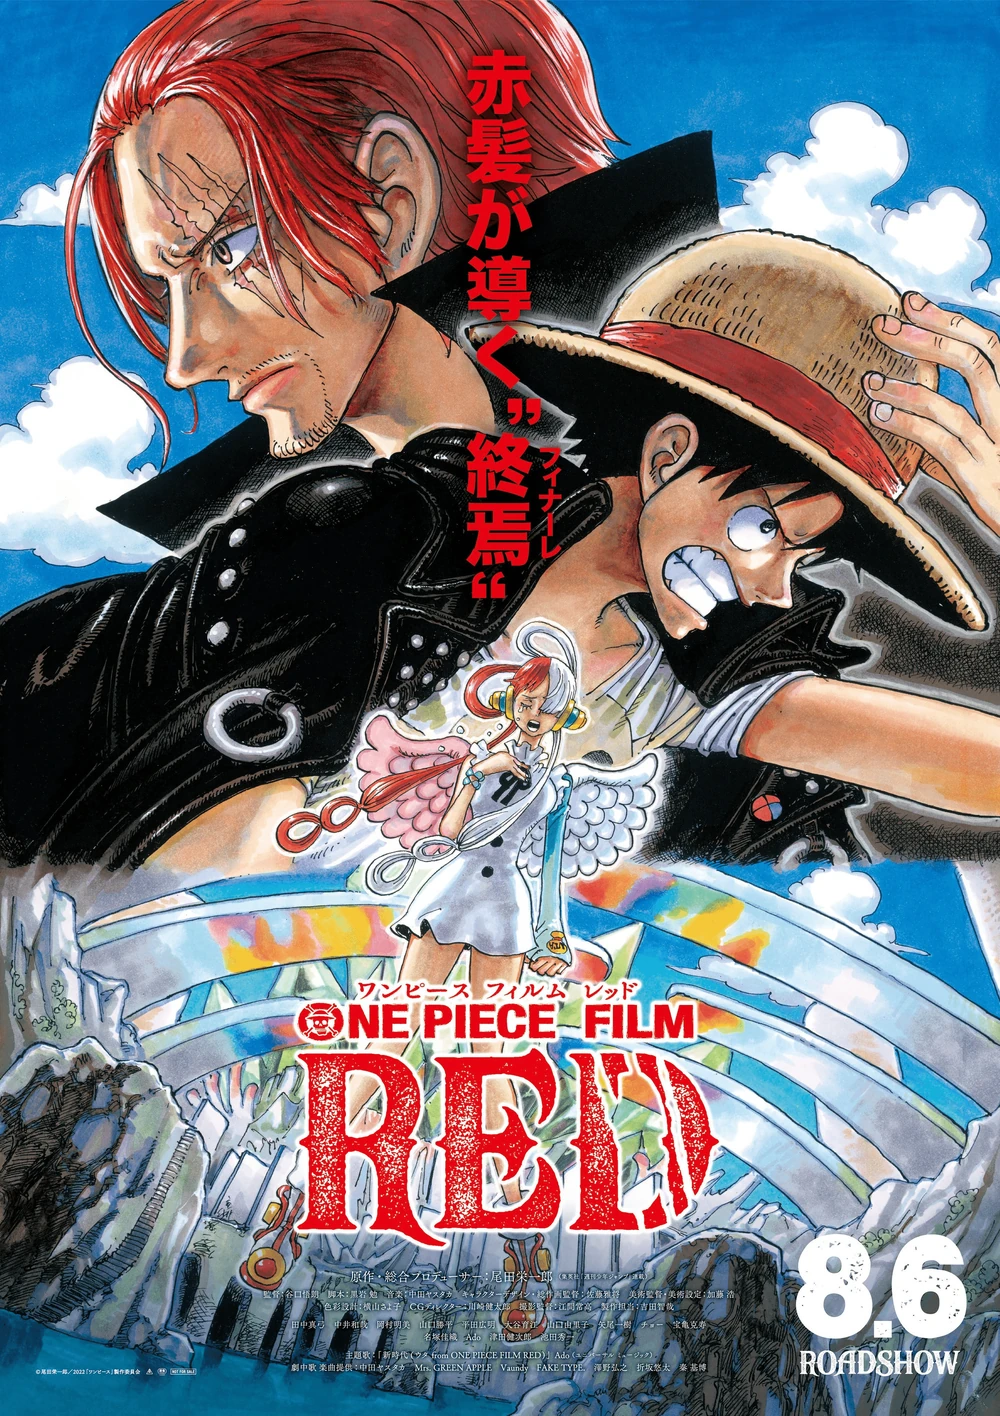 One Piece: 8 episódios do anime para ver ANTES da estreia da série